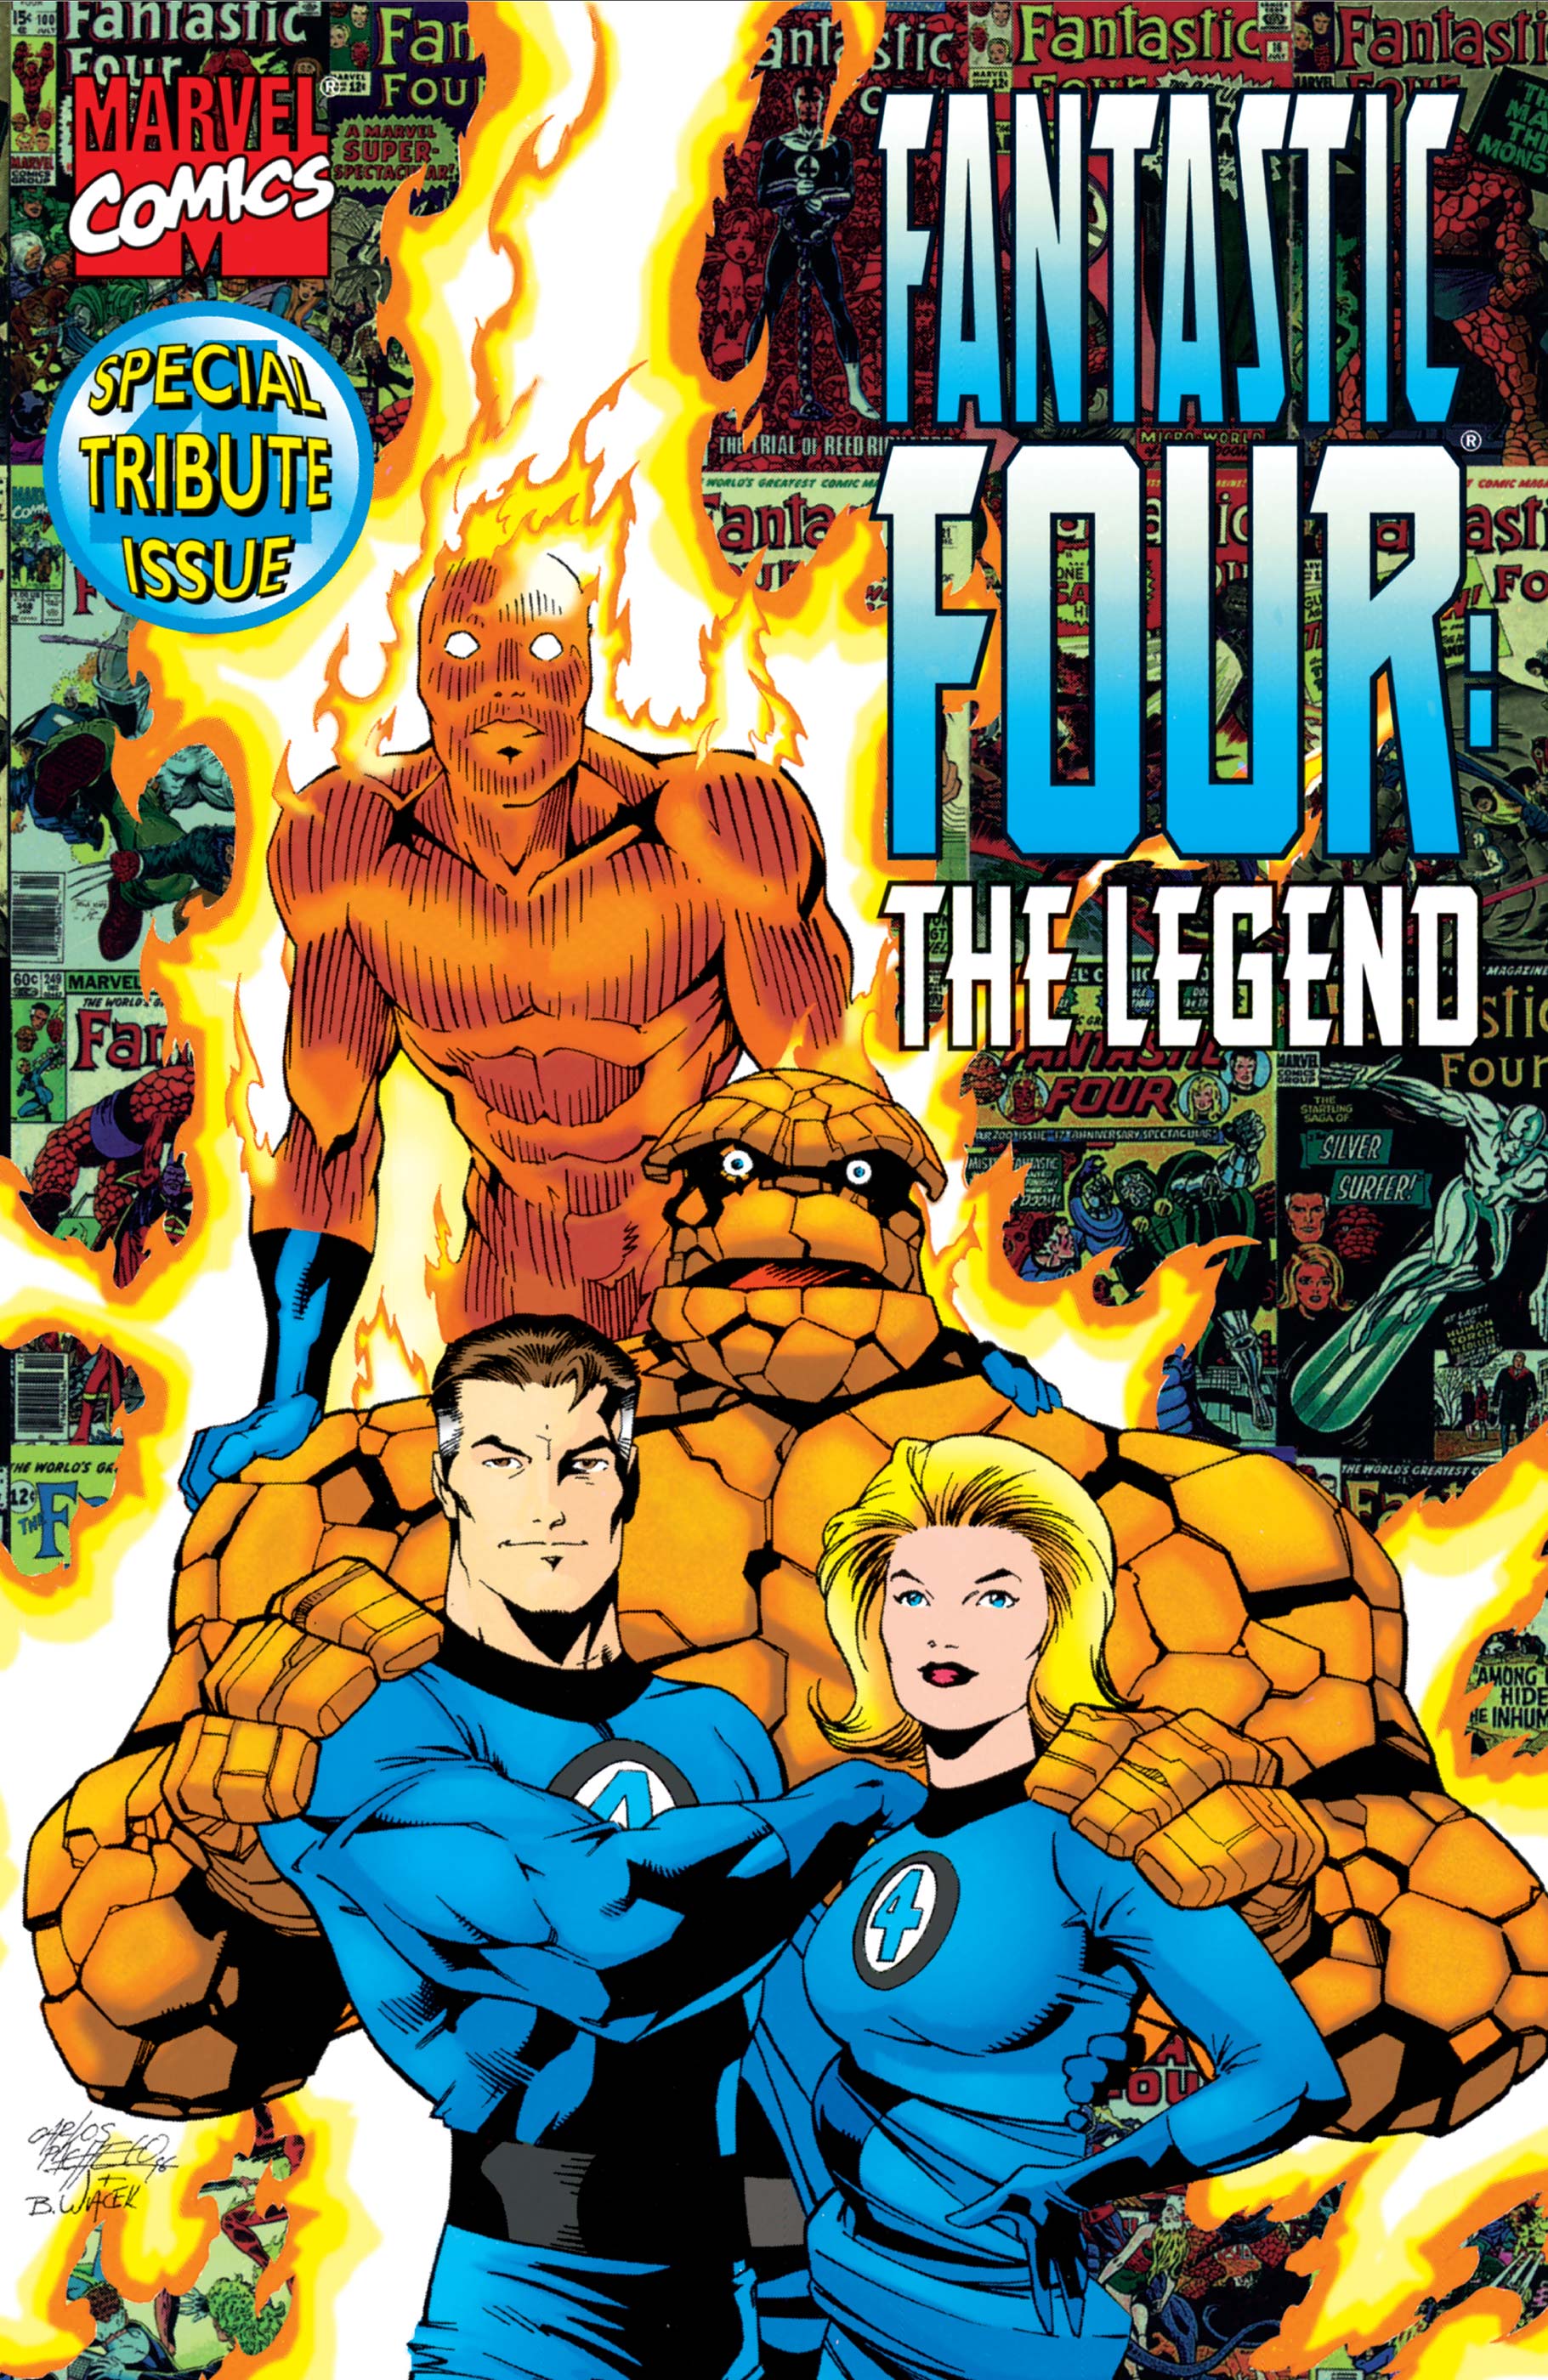 Fantastic Four: The Legend (1996) #1